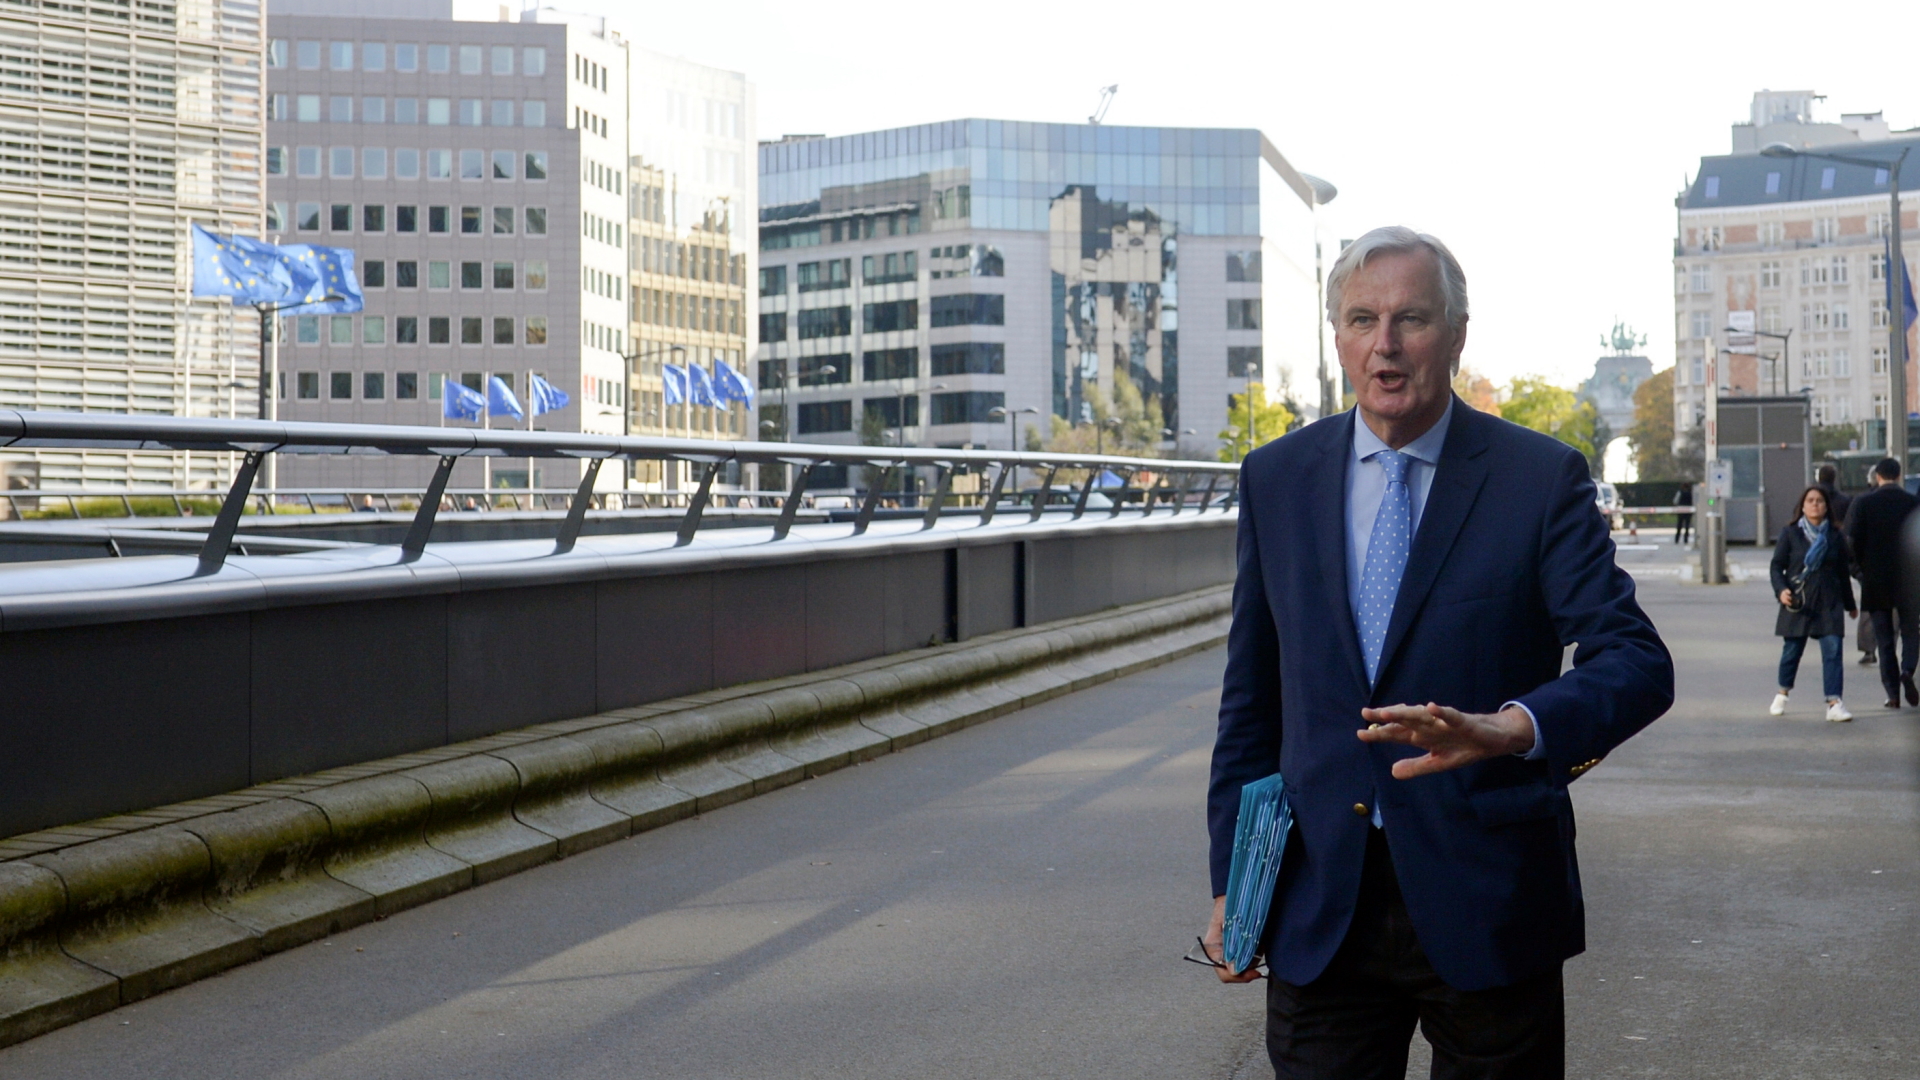 Der Brexit-Unterhändler der EU, Michel Barnier, nach dem Treffen in Brüssel. | REUTERS